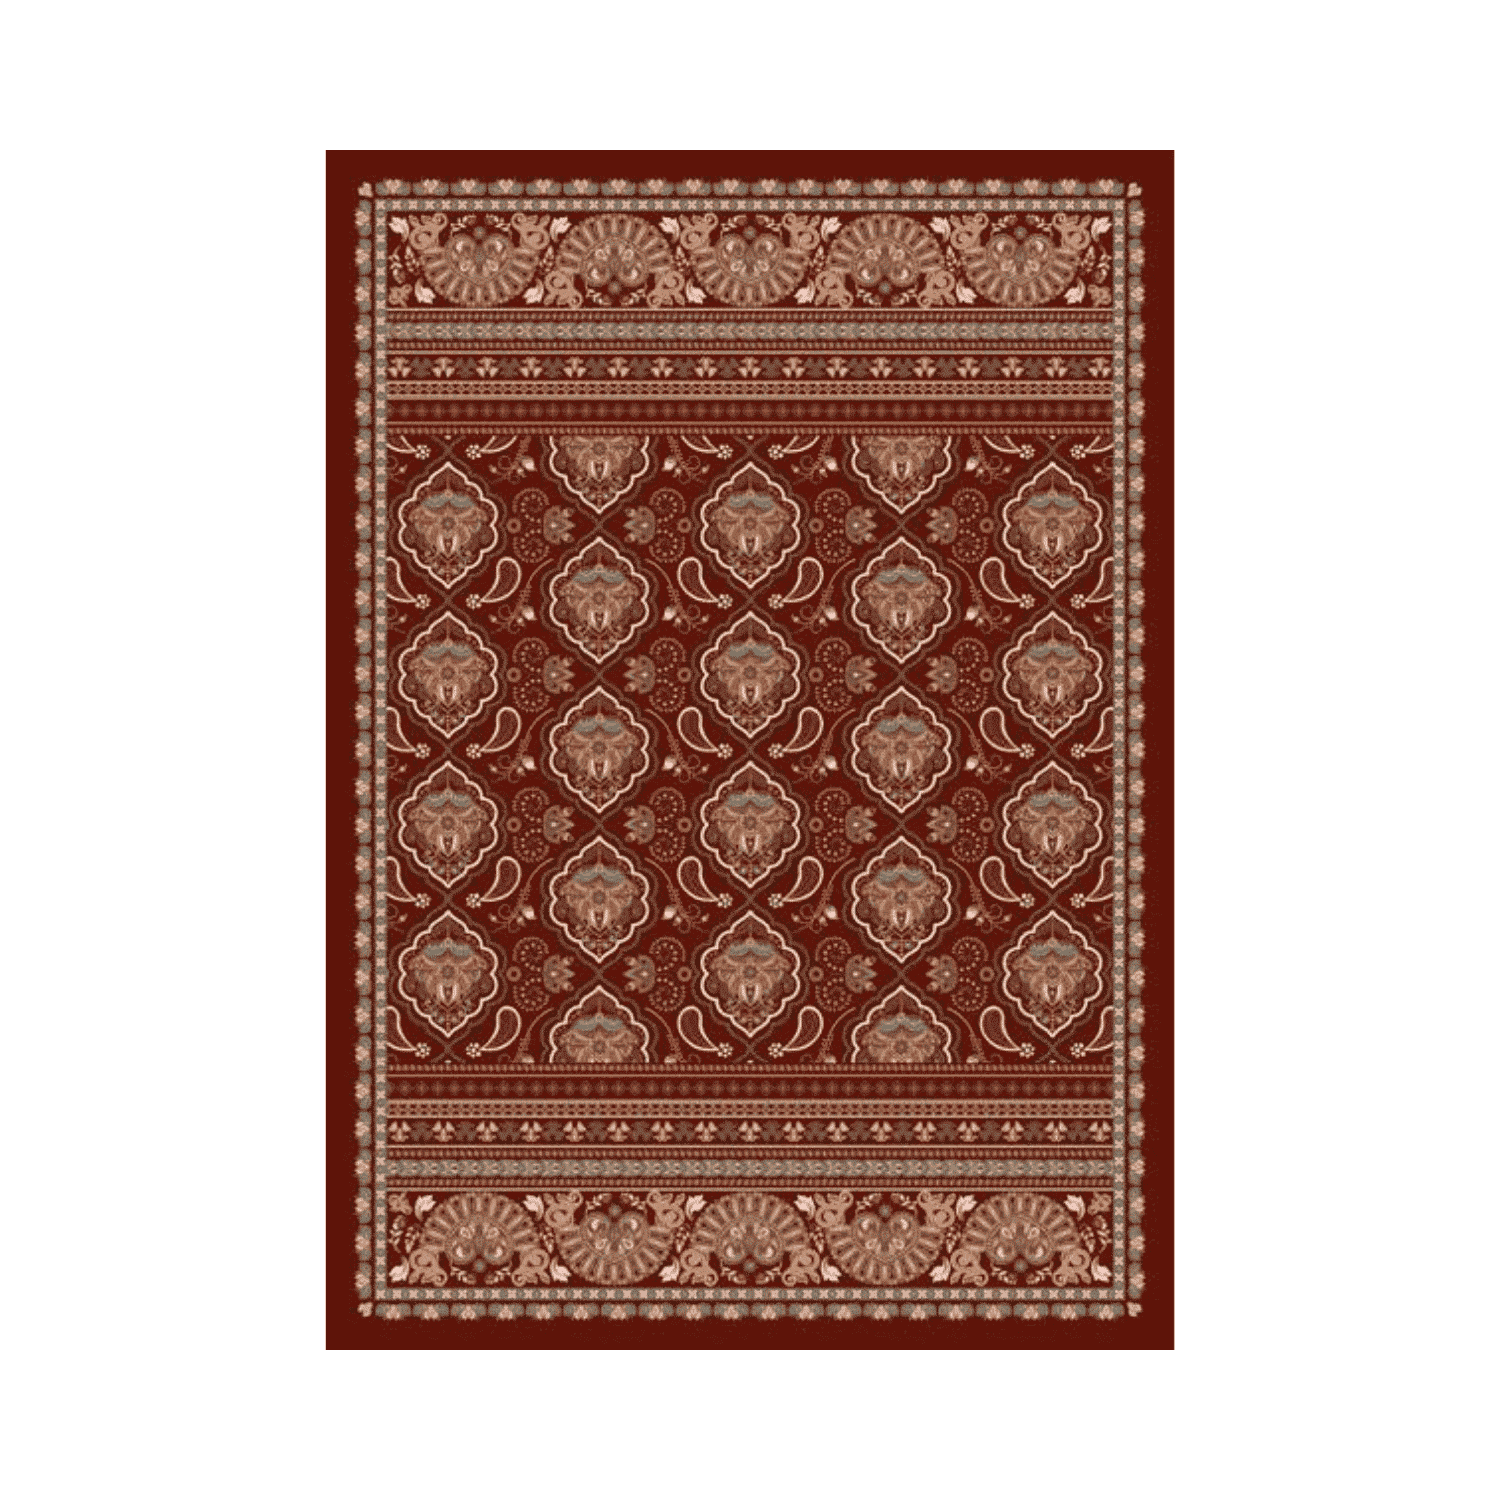 bollywood-tappeto-arredo-emozioni-artista-decori-indiani-medaglioni-bordeaux-multicolor-front